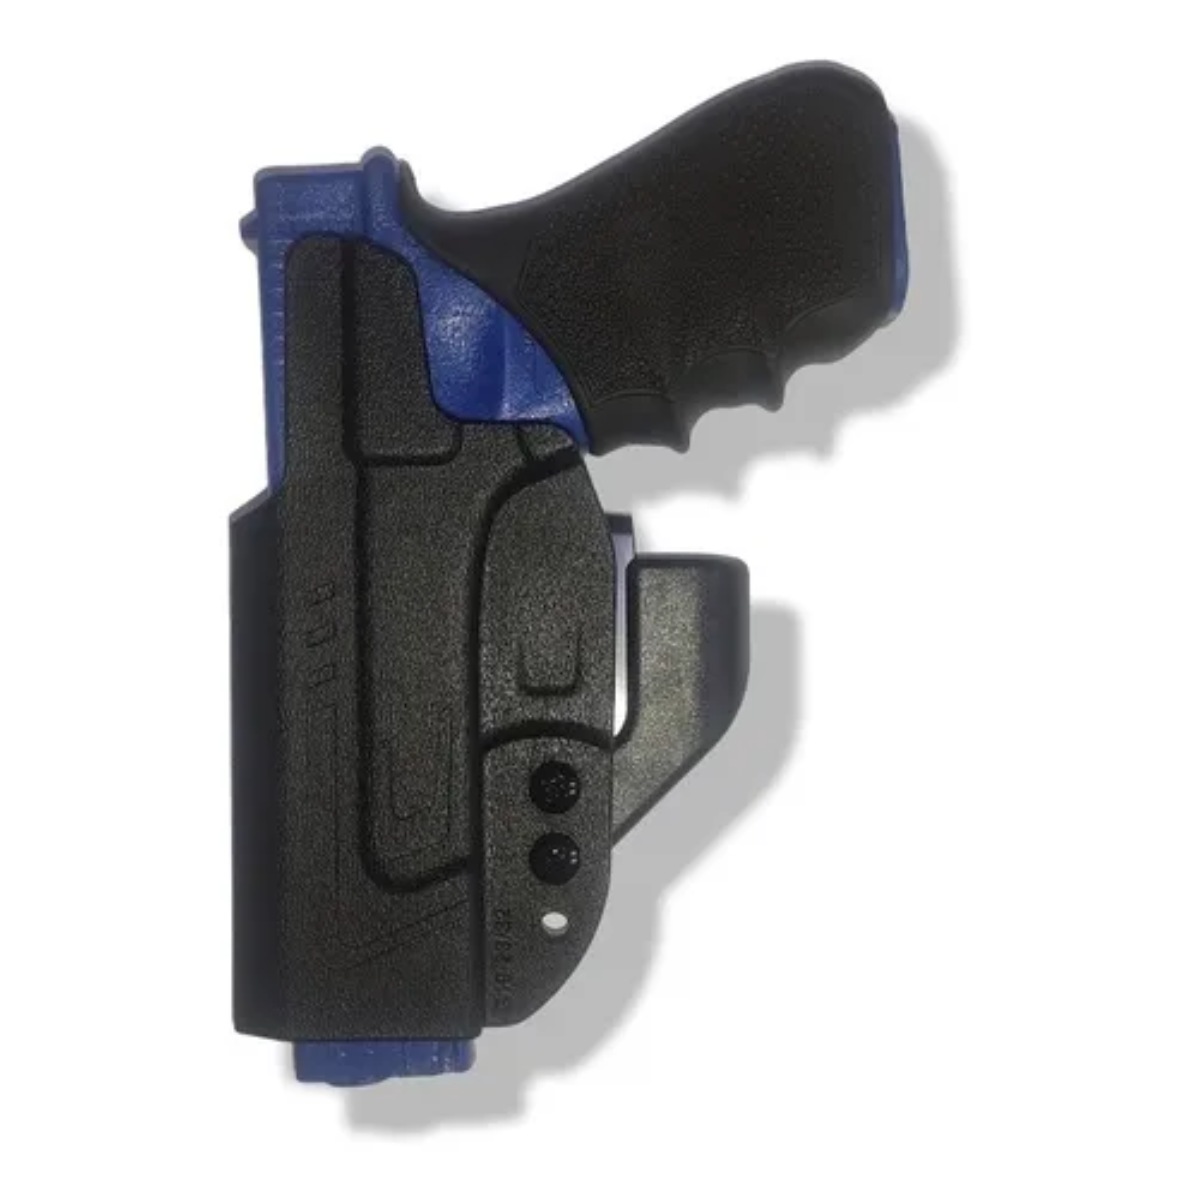 Funda Interna Glock 25 Polimero Cytac